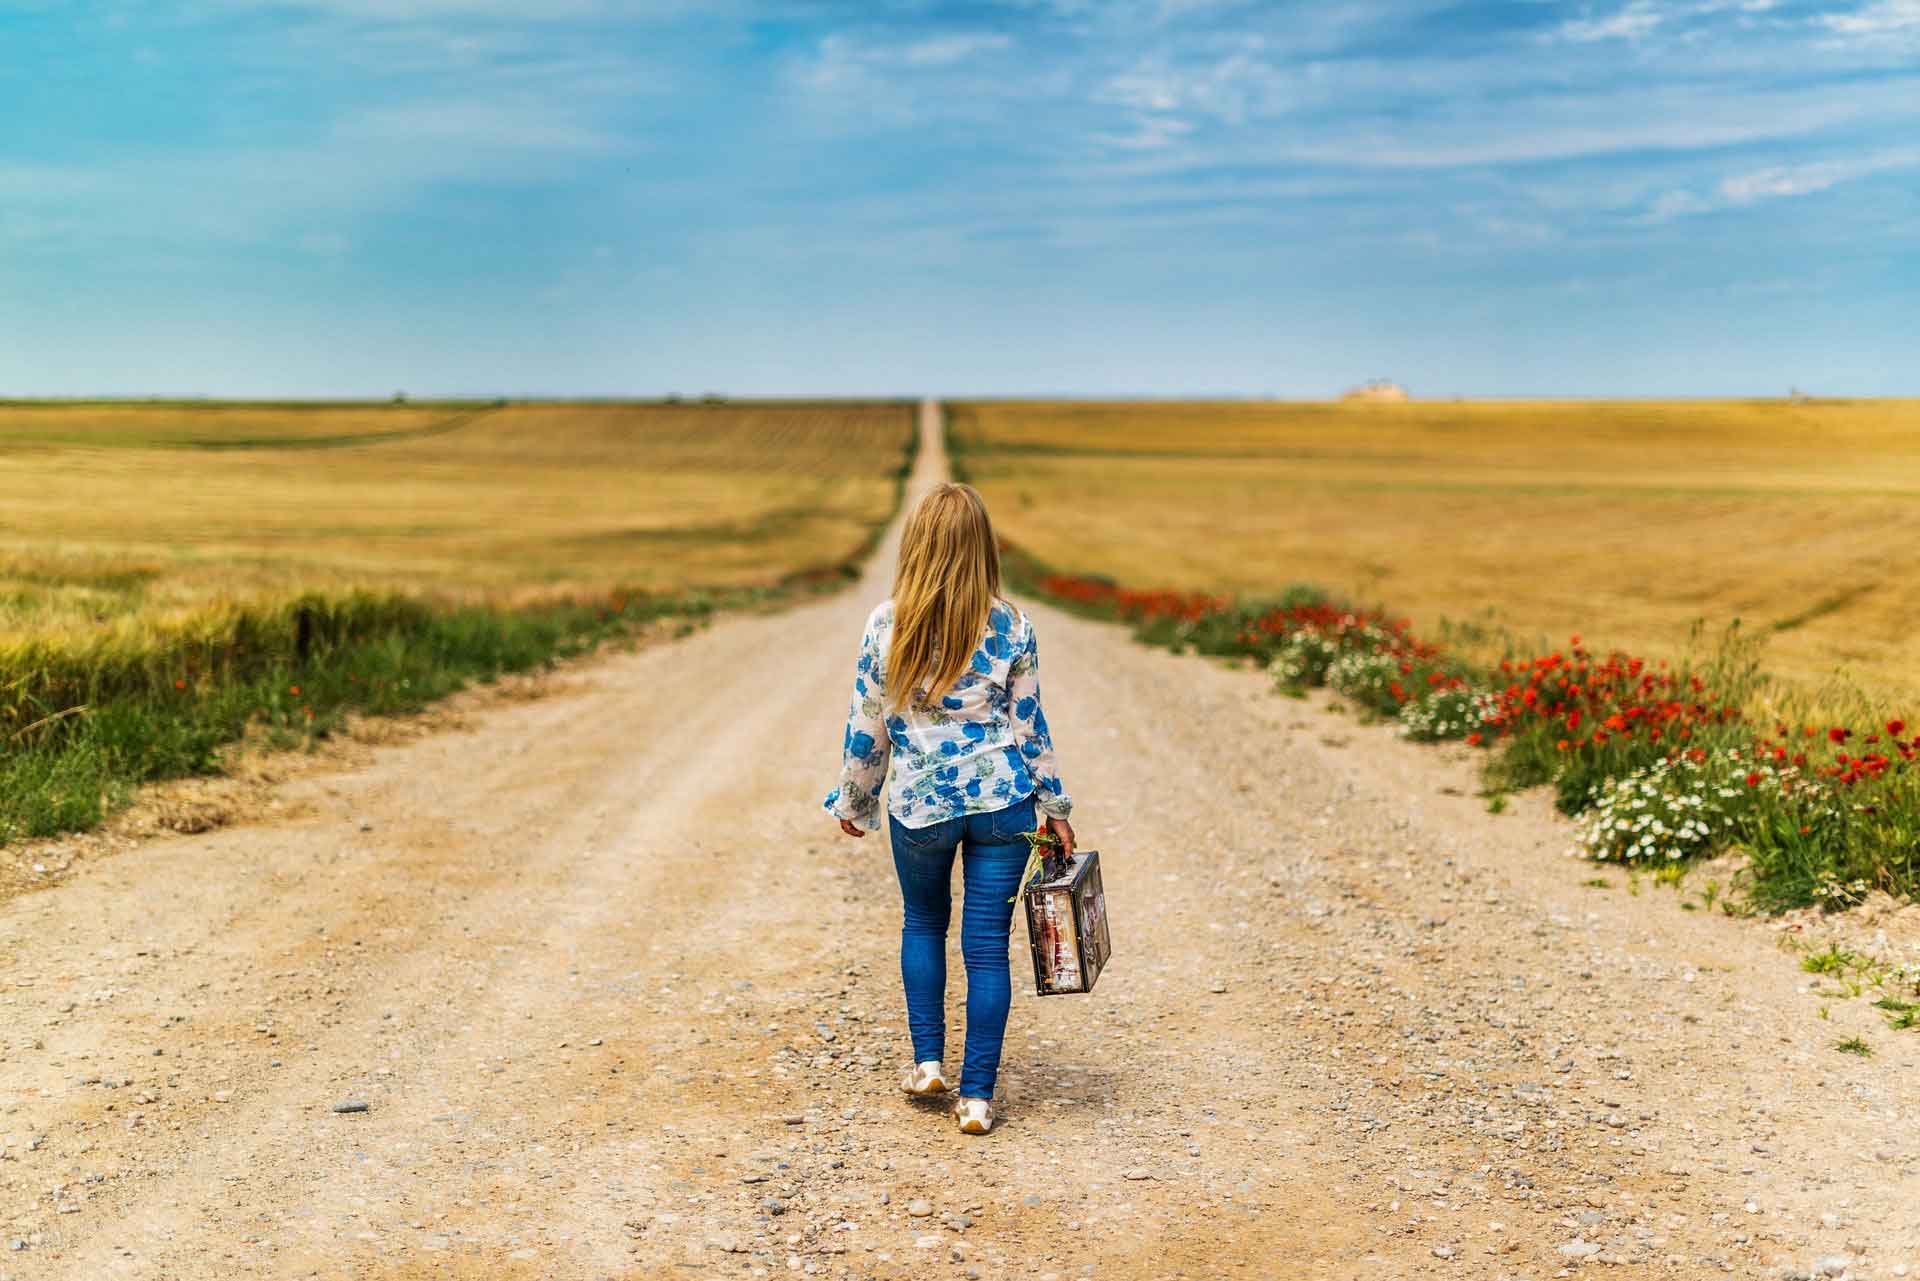 Nainen kävelee matkalaukkuk kädessä keskellä hiekkatietä, jota ympäröivät viljapellot.